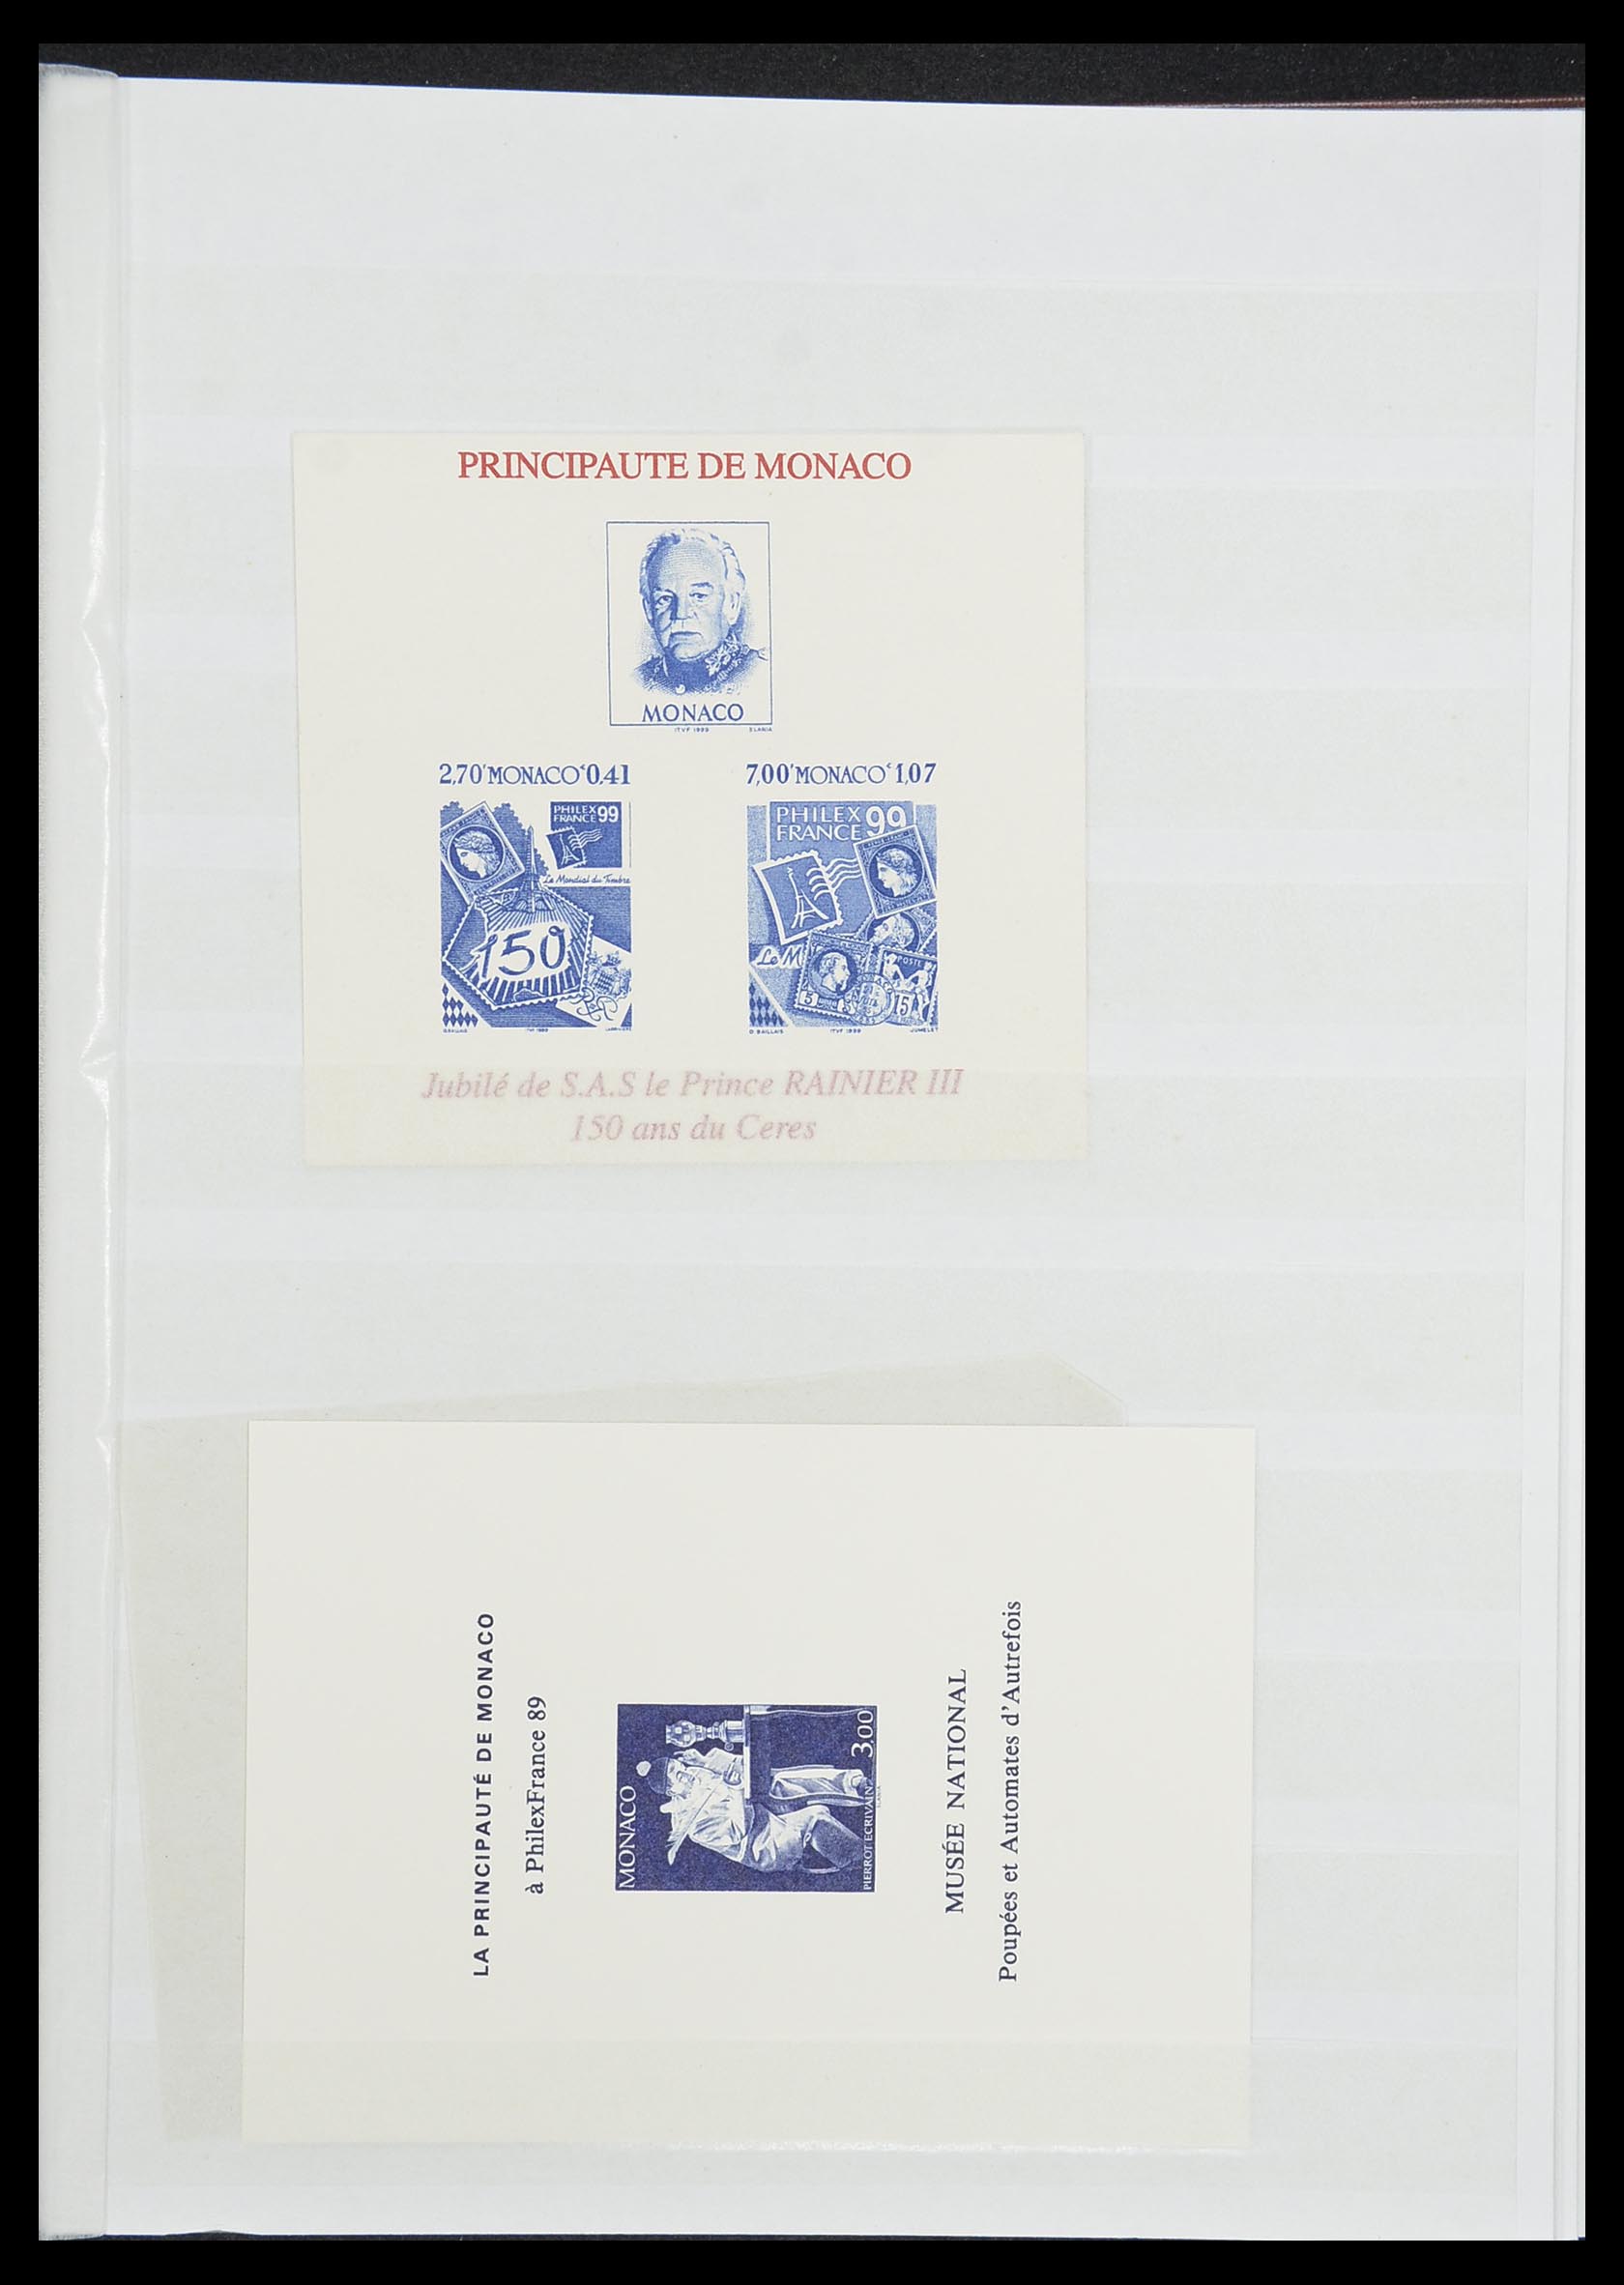 33833 028 - Stamp collection 33833 Monaco souvenir sheets 1979-2015.